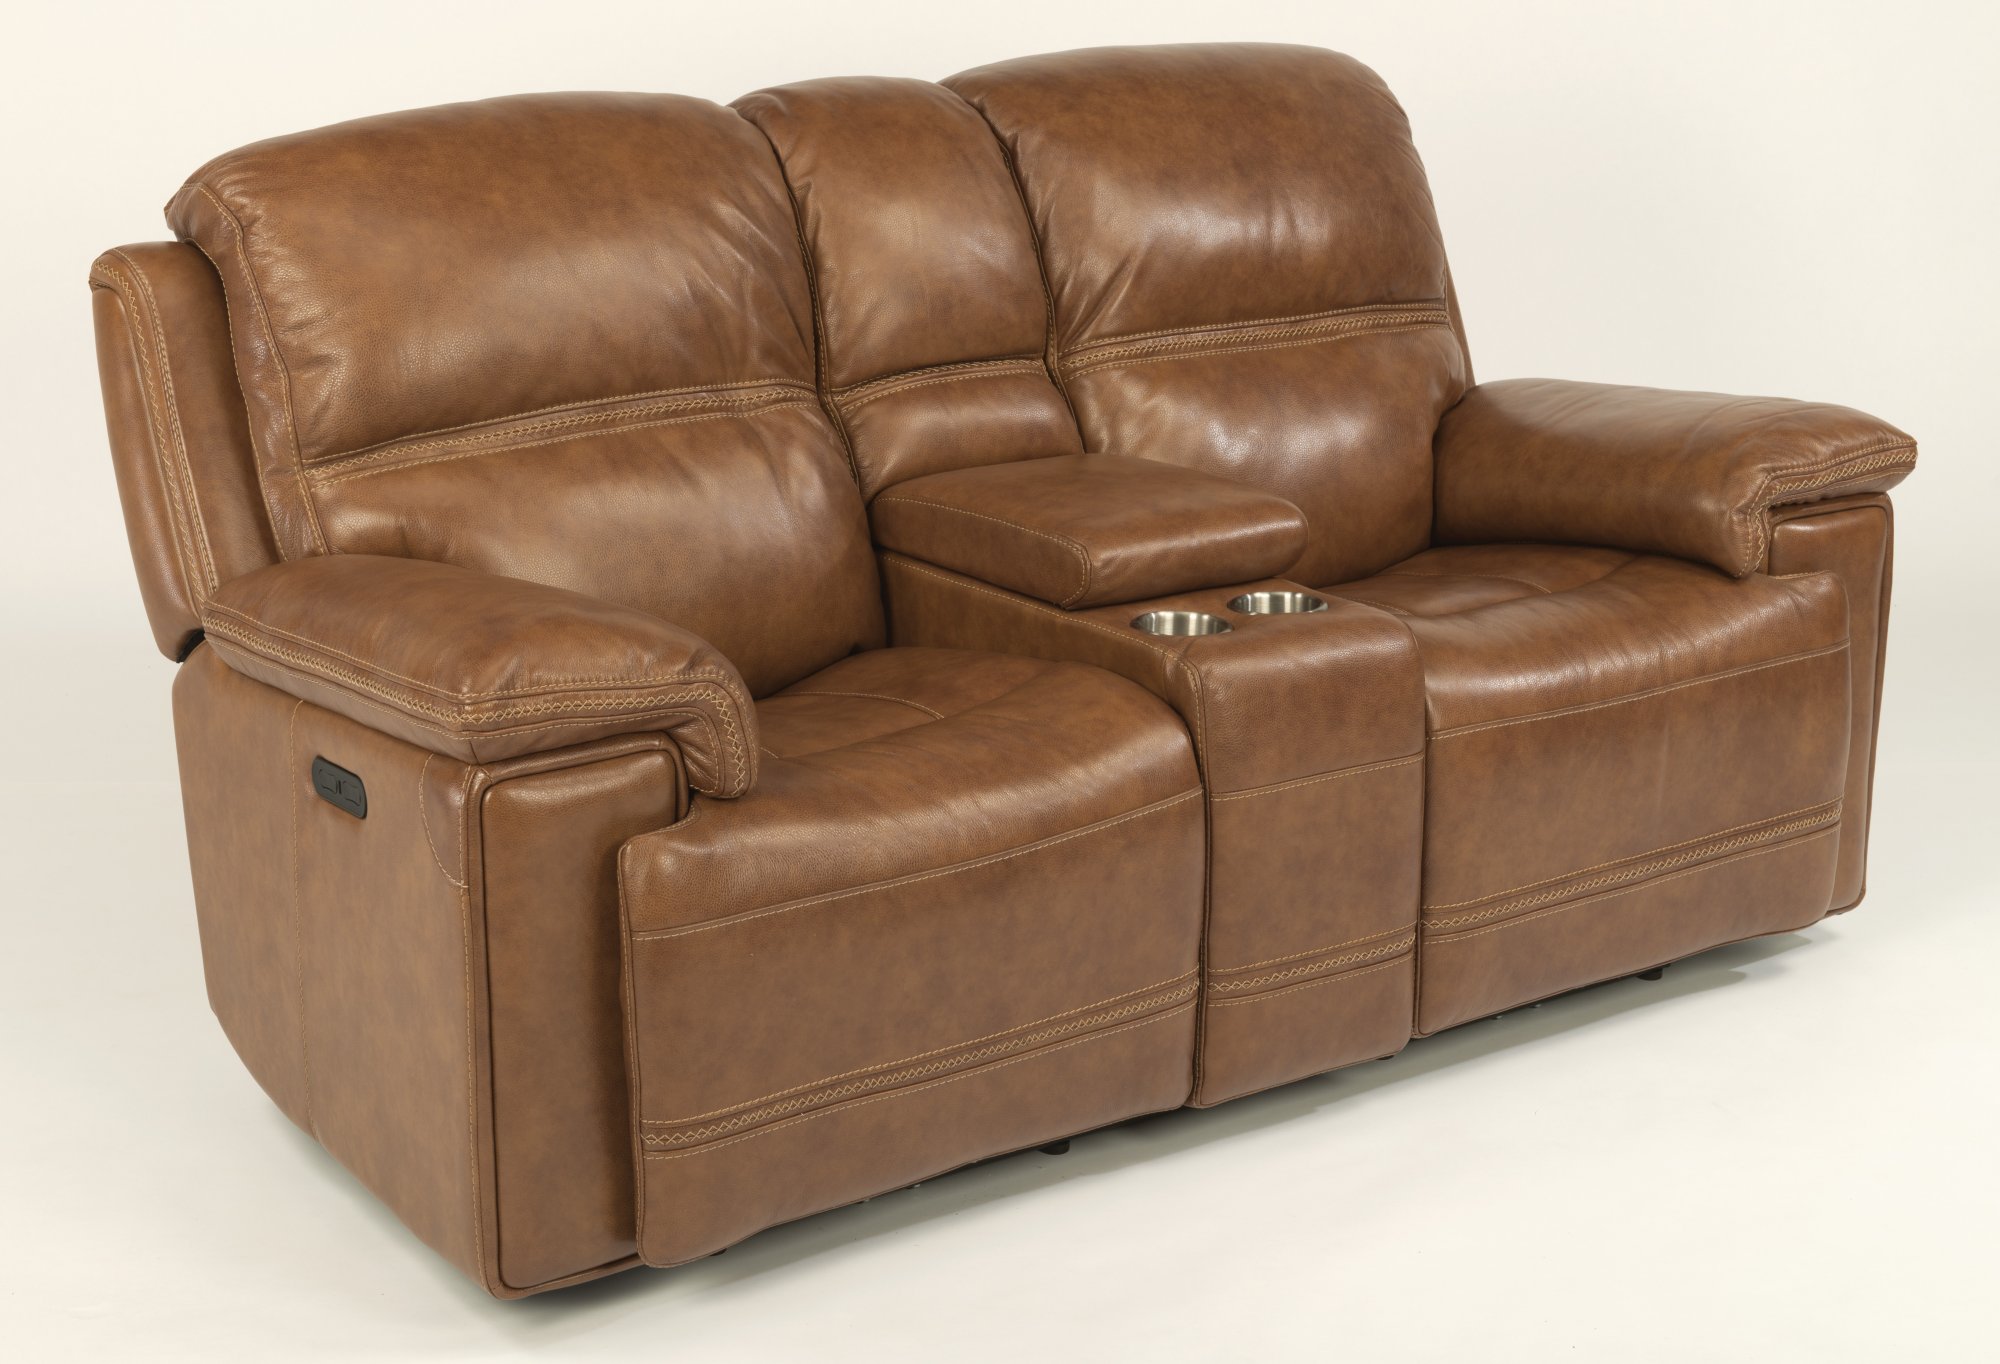 flexsteel fenwick living room furniture